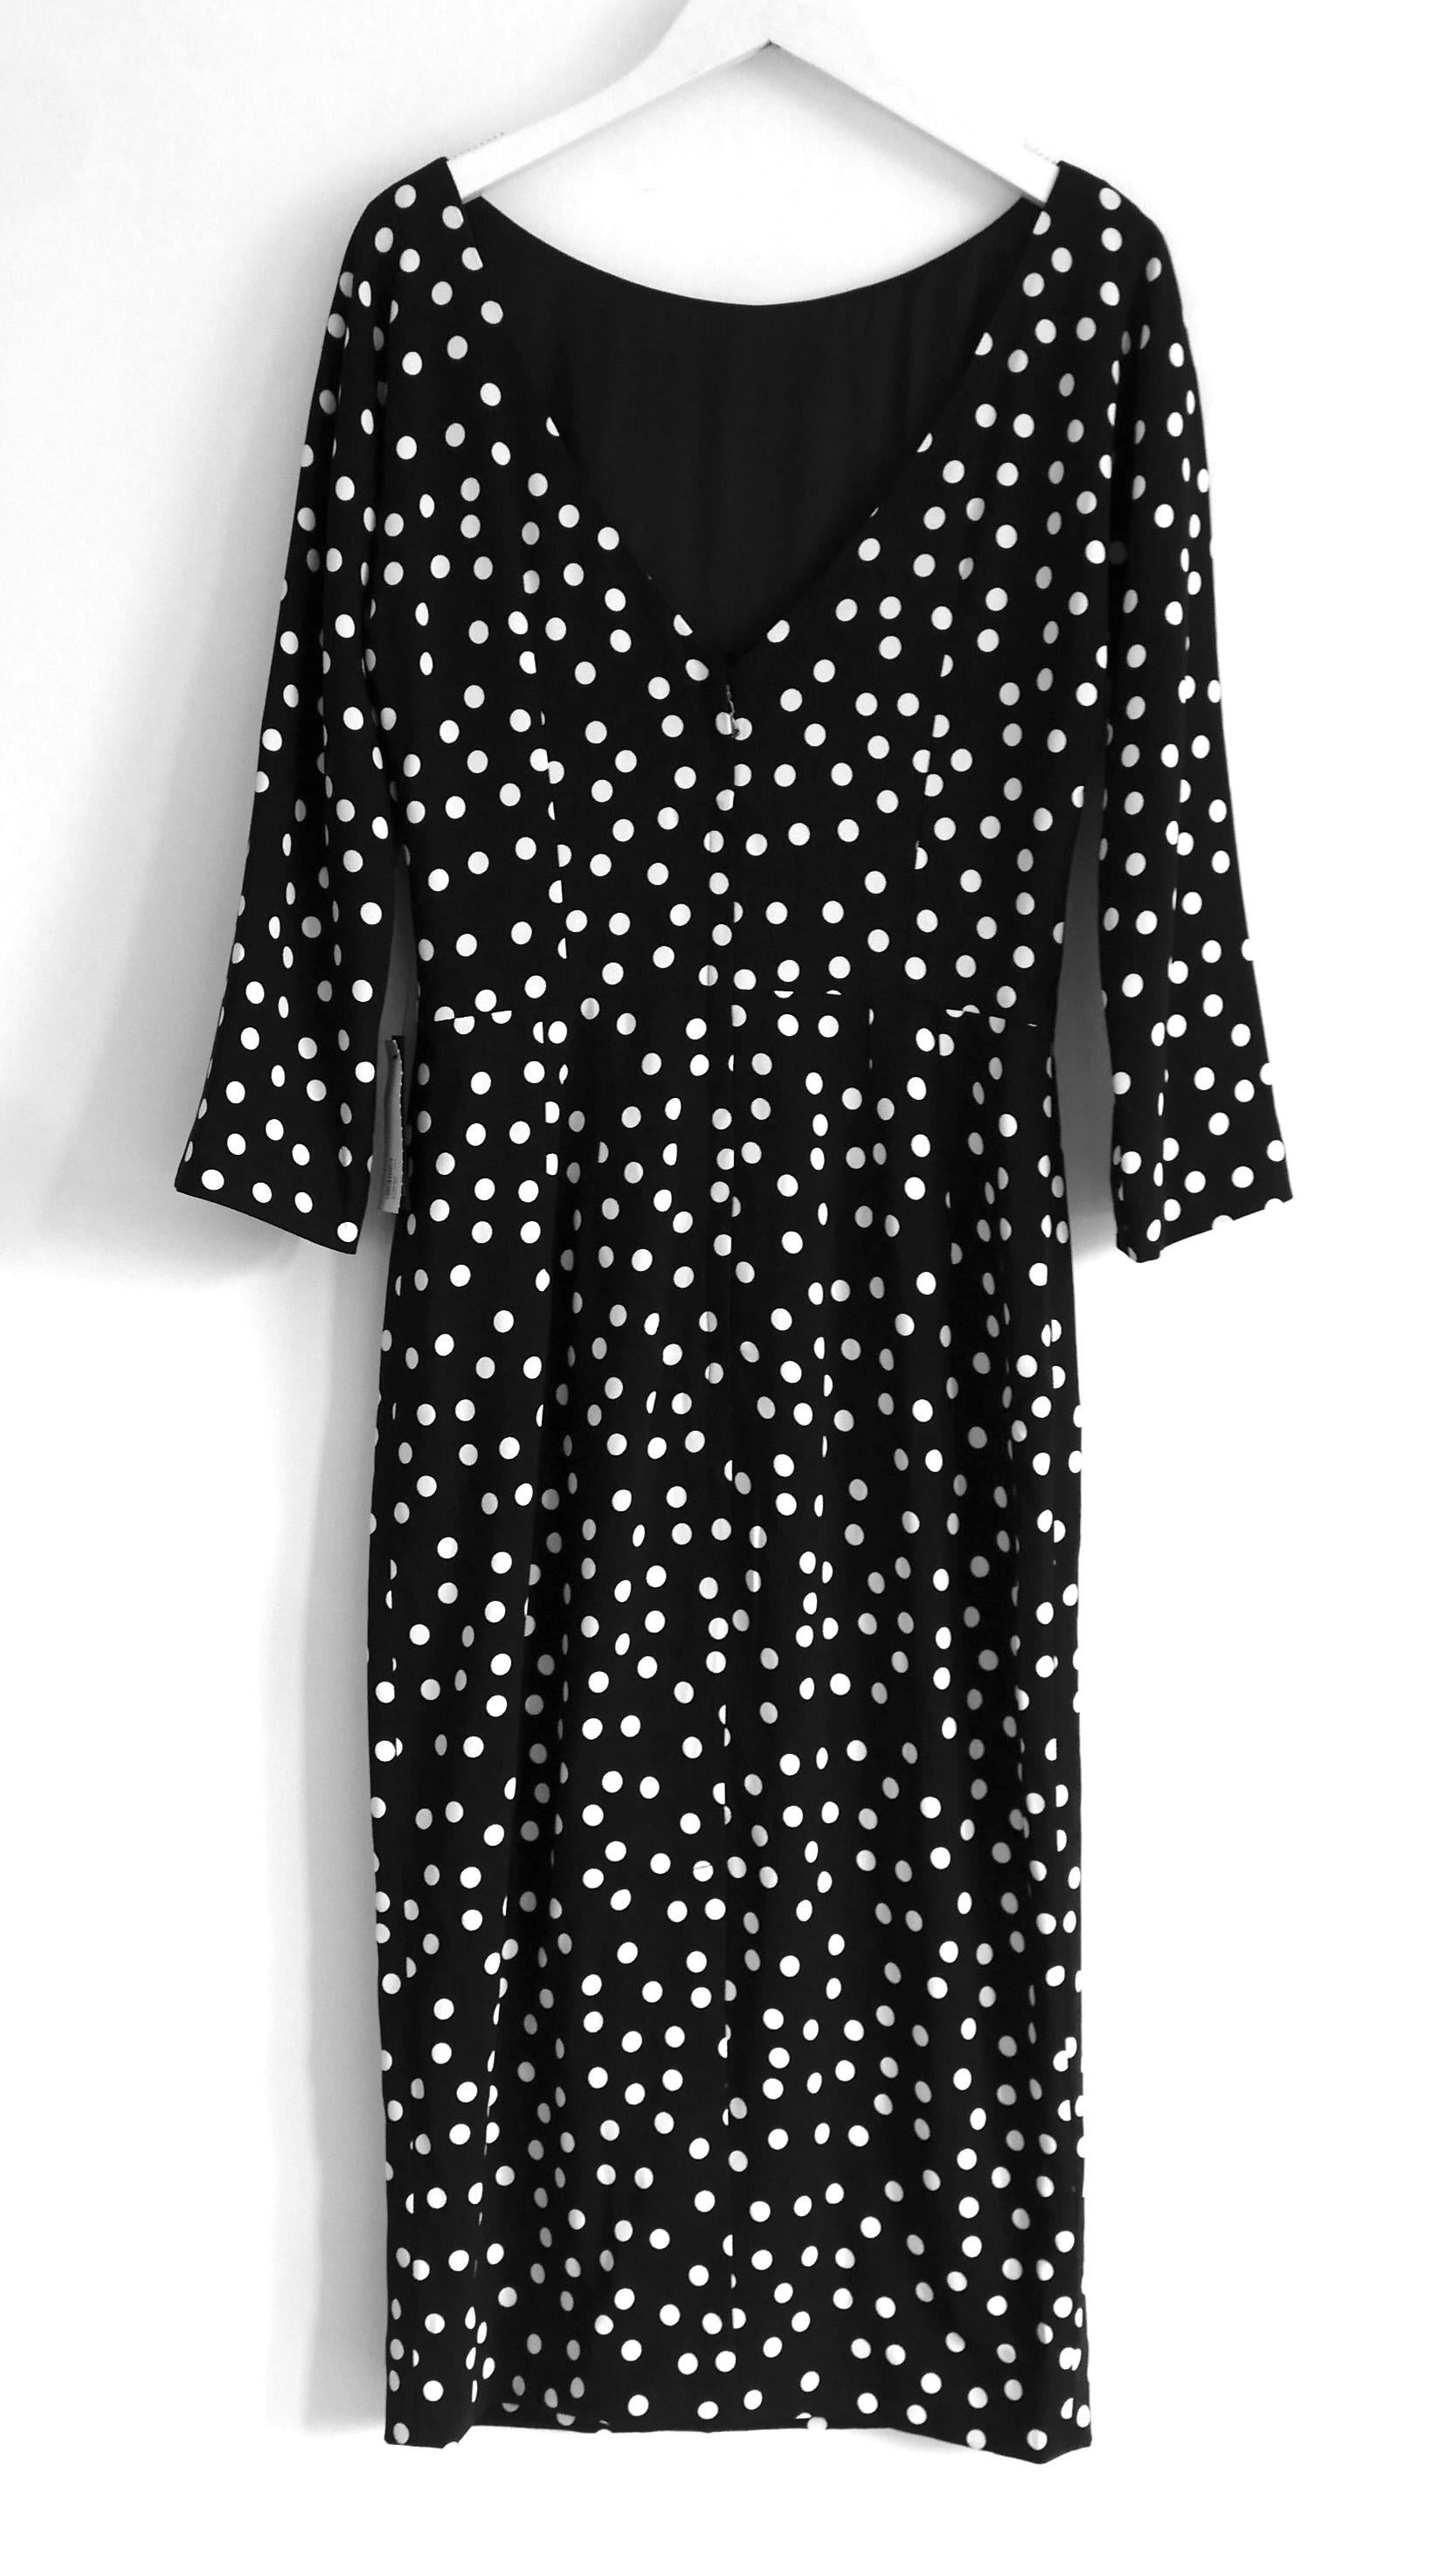 Dolce & Gabbana polka dot print sheath dress For Sale 1